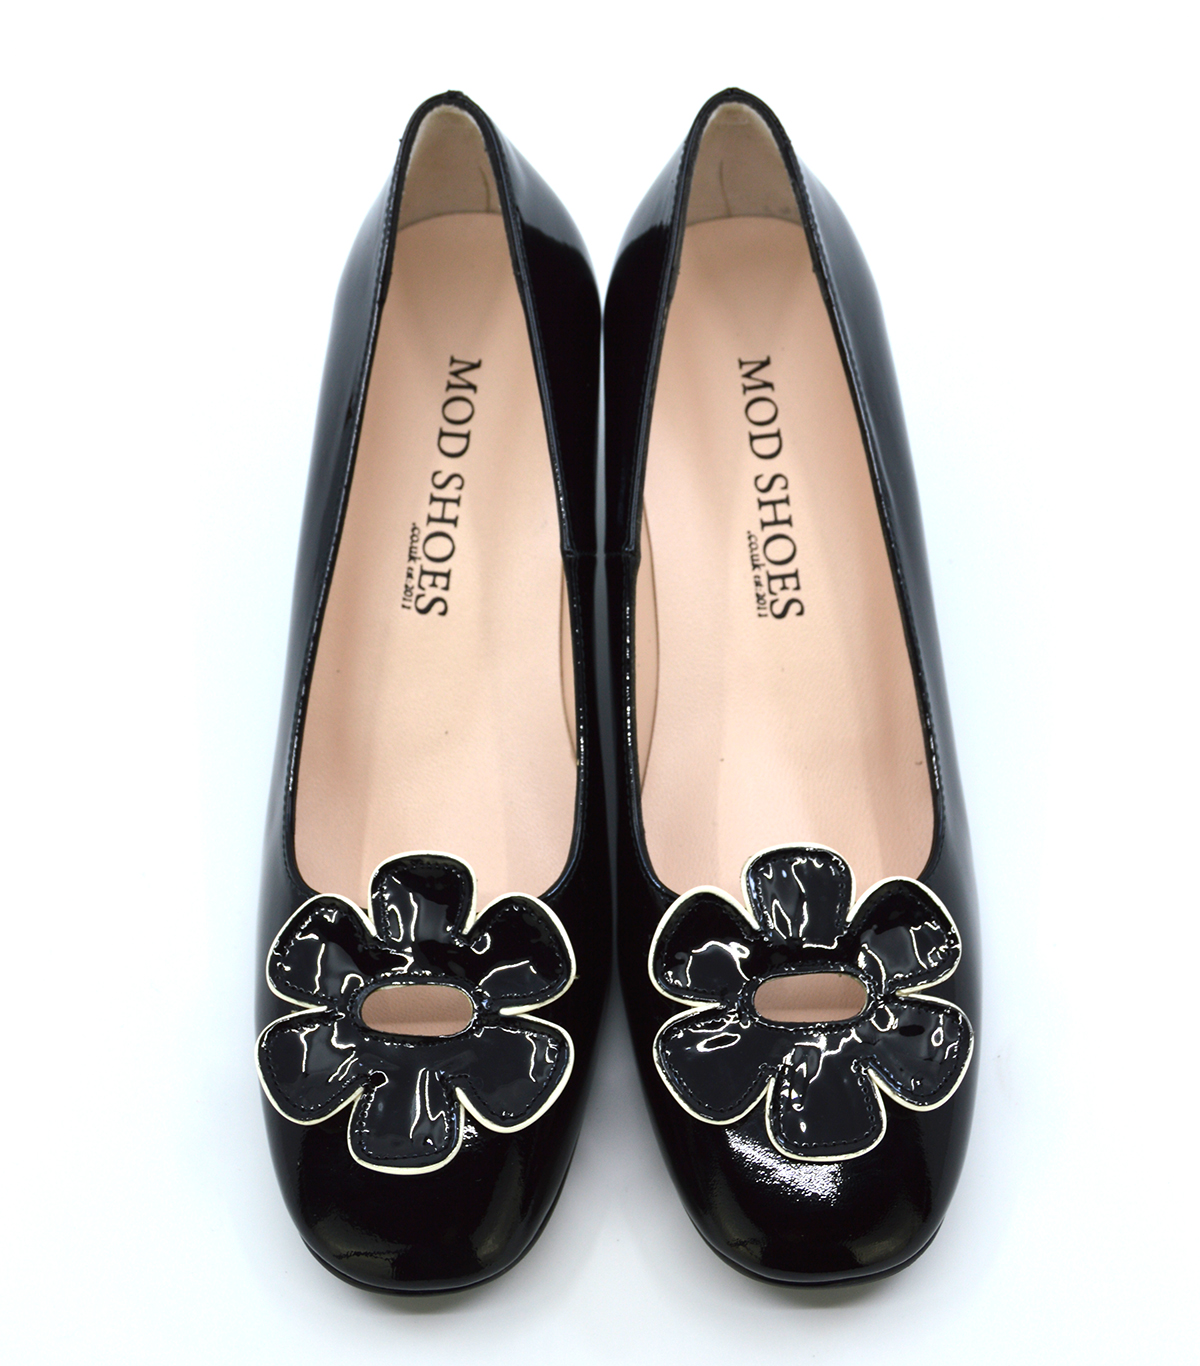 The Fleur Flower Shoes – Ladies Retro 